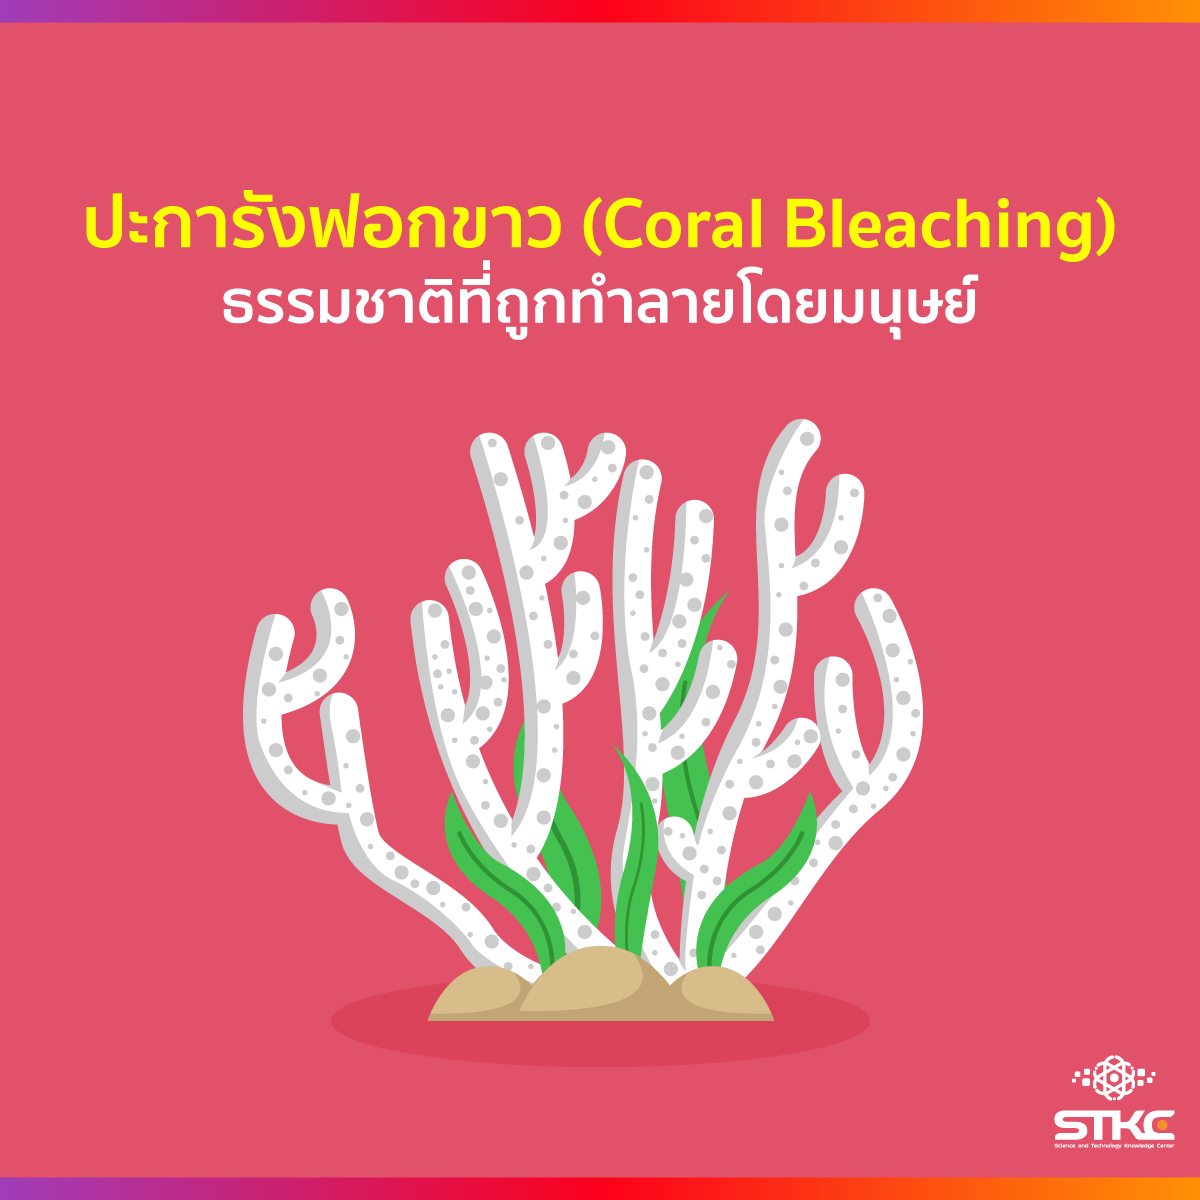 ปะการังฟอกขาว (Coral Bleaching) ธรรมชาติที่ถูกทำลายโดยมนุษย์